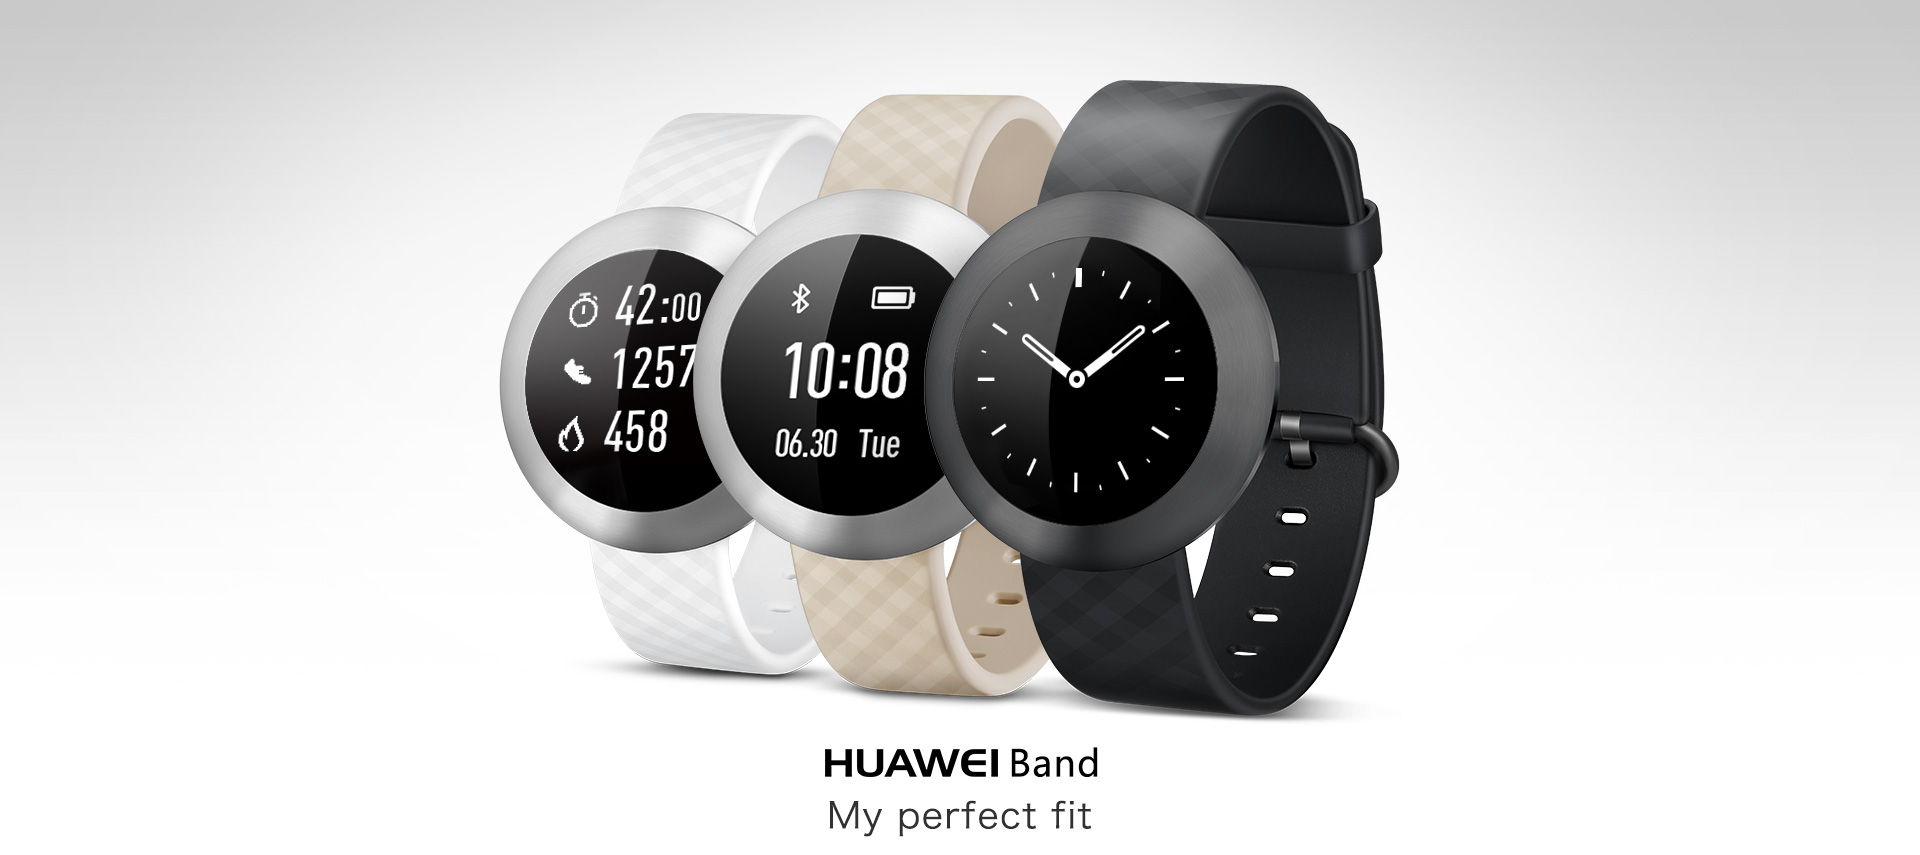 Установить часы huawei band. Хуавей бэнд 8. Часы Хуавей бэнд 8. Huawei Band 1. Умные часы Huawei Band 8.